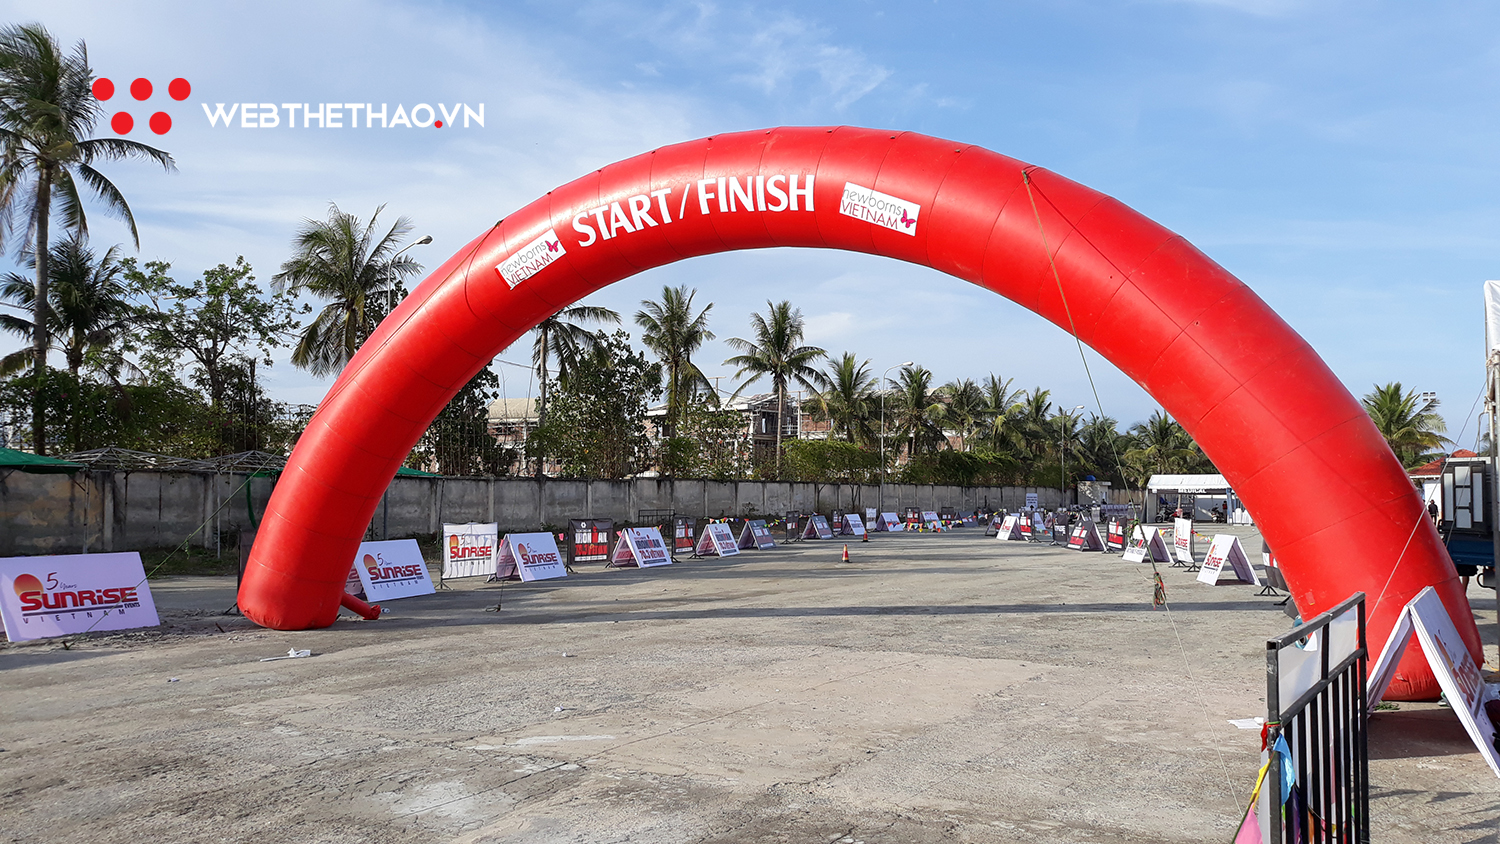 Khám phá đường đua IRONMAN 70.3 Việt Nam Vô địch châu Á Thái Bình Dương 2019